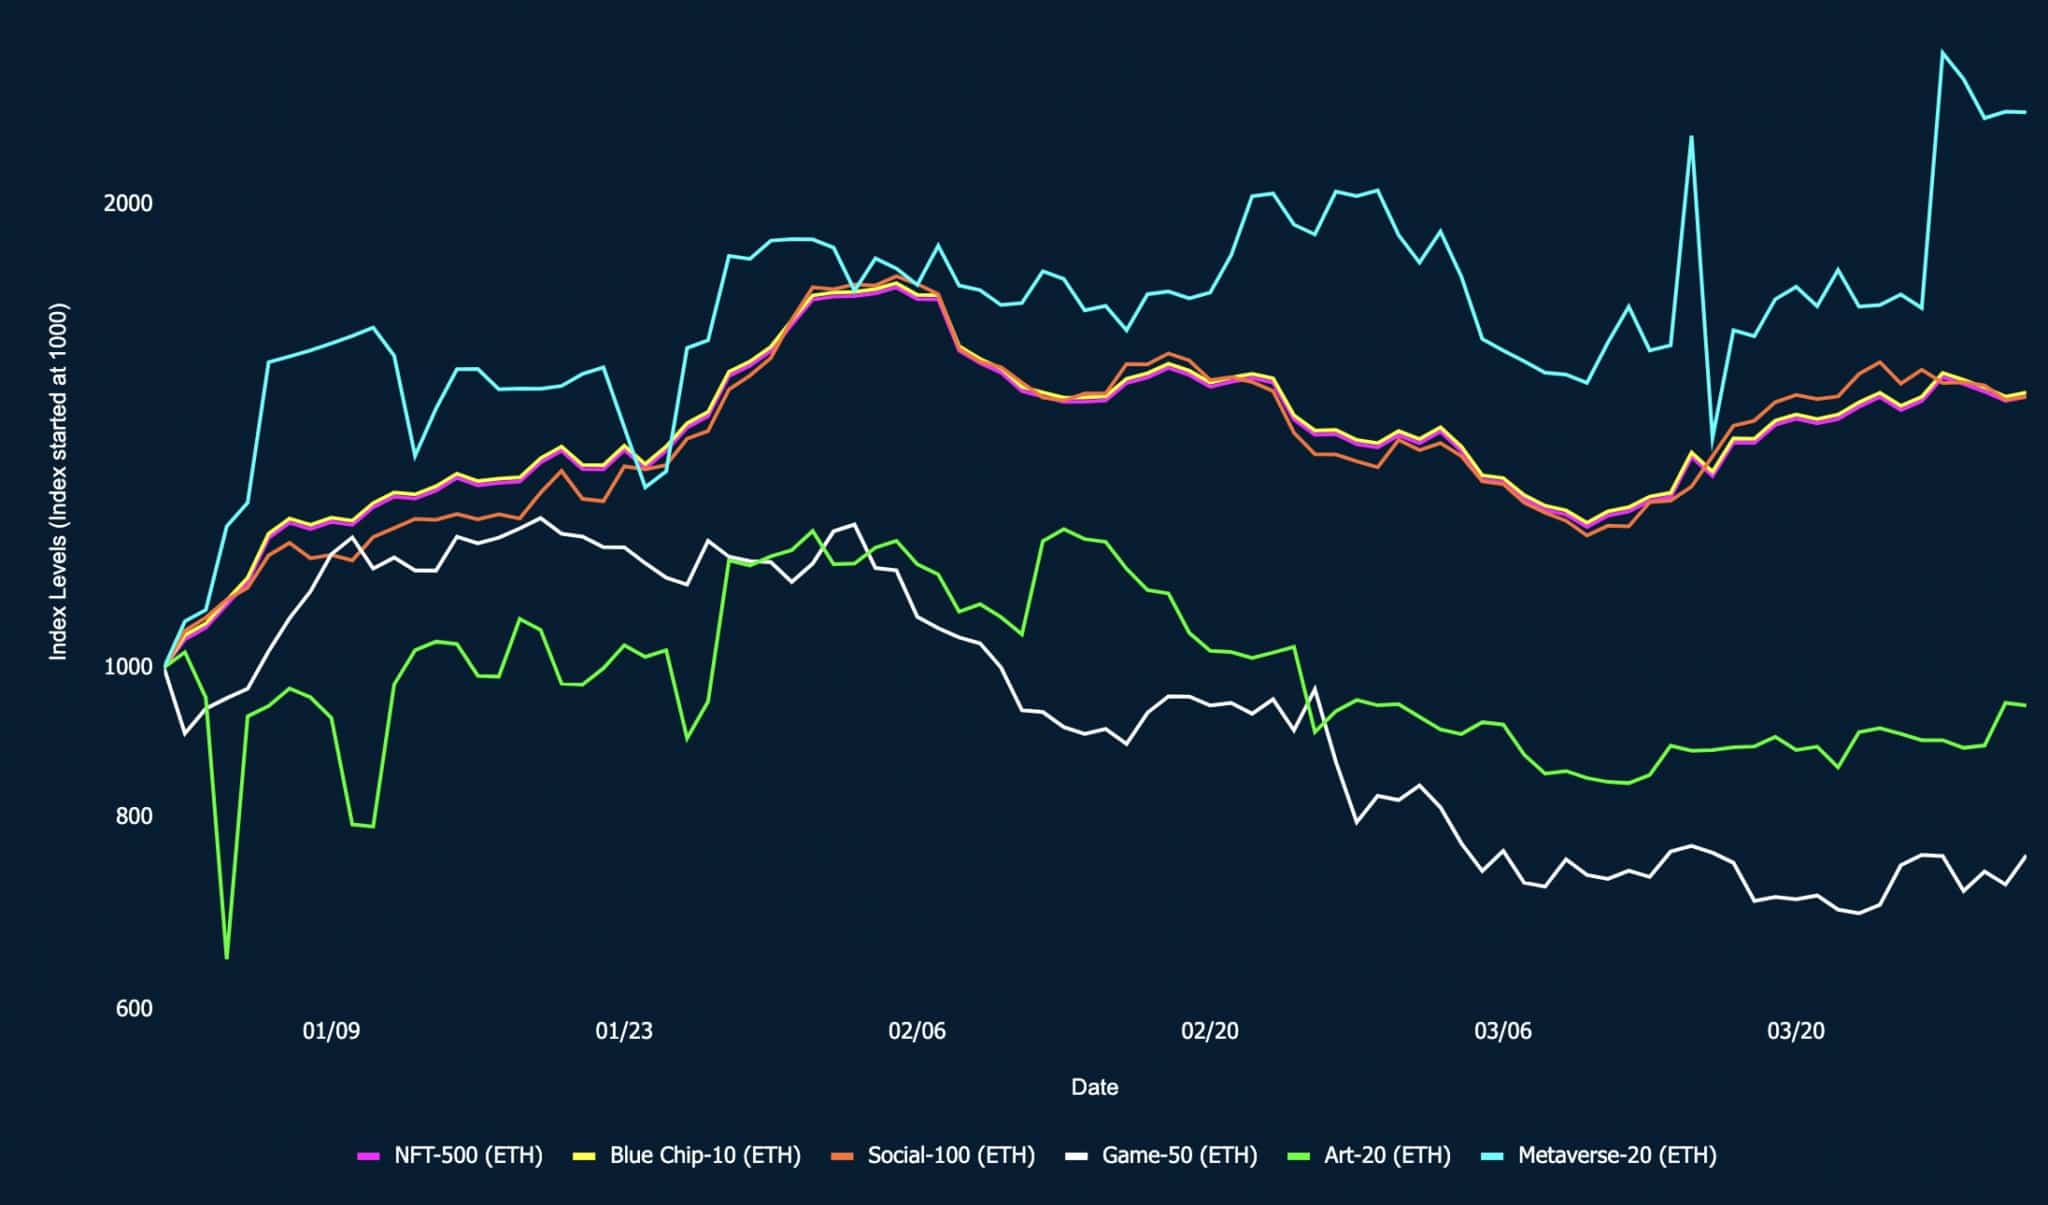 Index Gaming-50 zaznamenal největší pokles ze všech indexů NFT - obrázek z nansen.ai